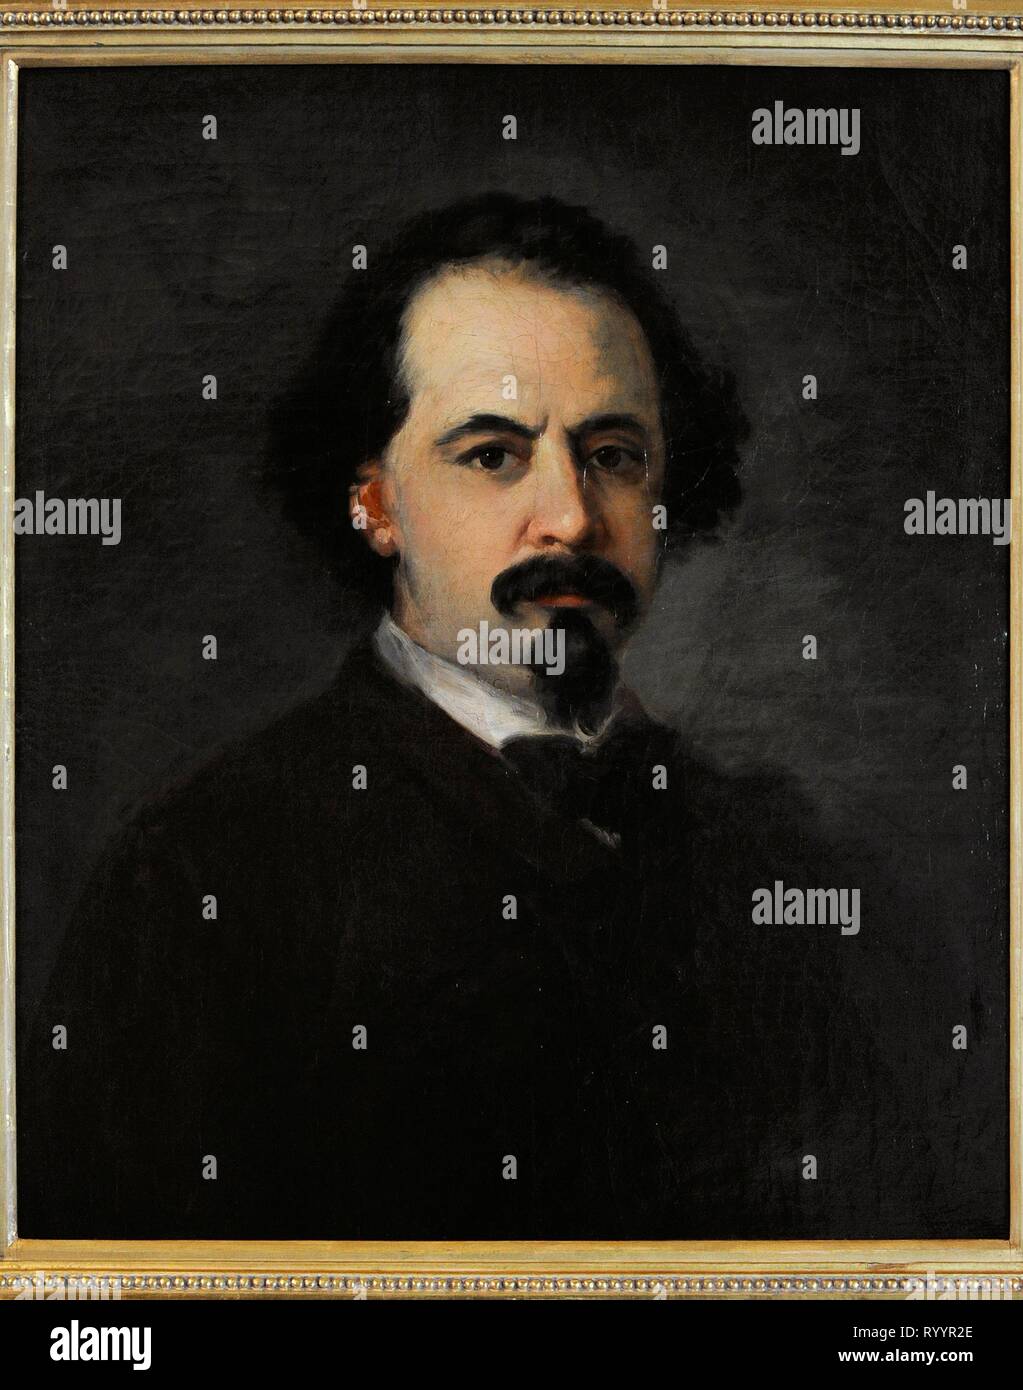 Eugenio Lucas Velázquez (1817-1870). Pintor español. Autorretrato, hacia  1860. Museo Lázaro Galdiano. Madrid. España Stock Photo - Alamy